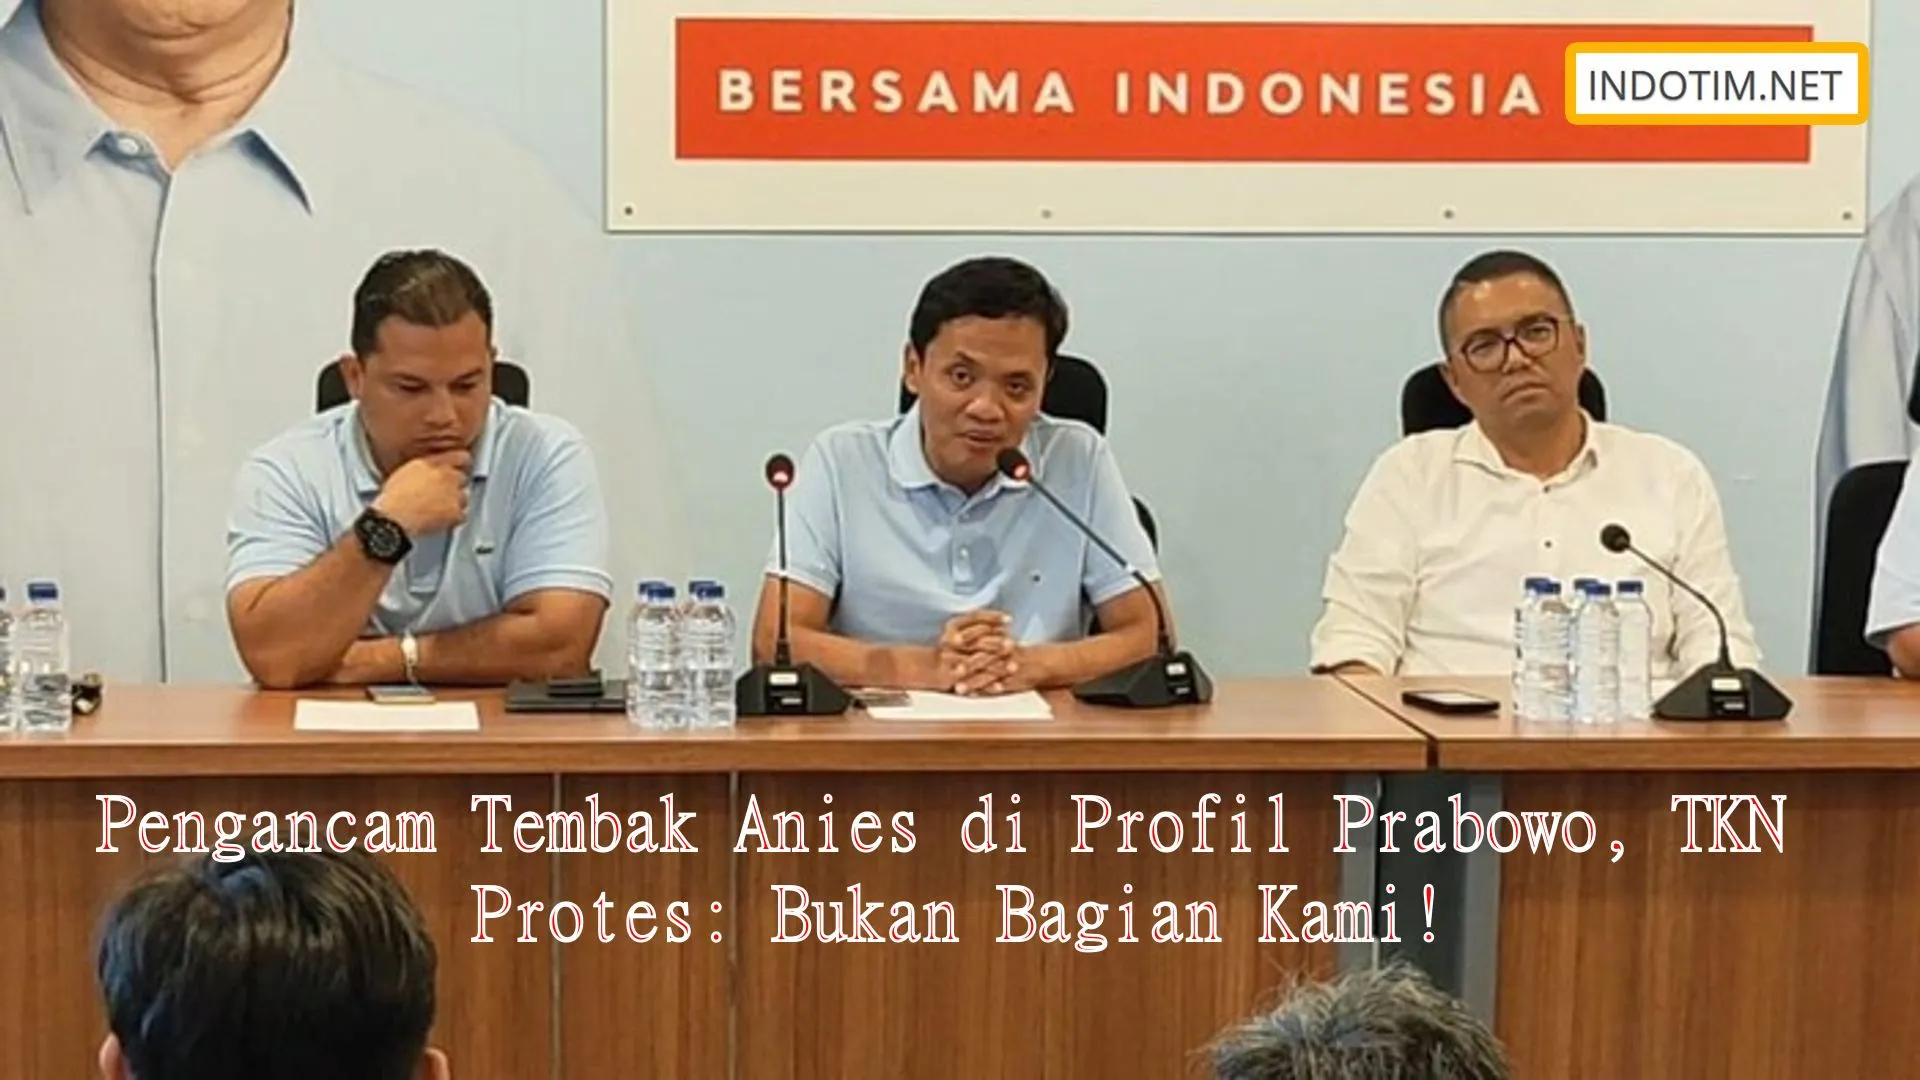 Pengancam Tembak Anies di Profil Prabowo, TKN Protes: Bukan Bagian Kami!